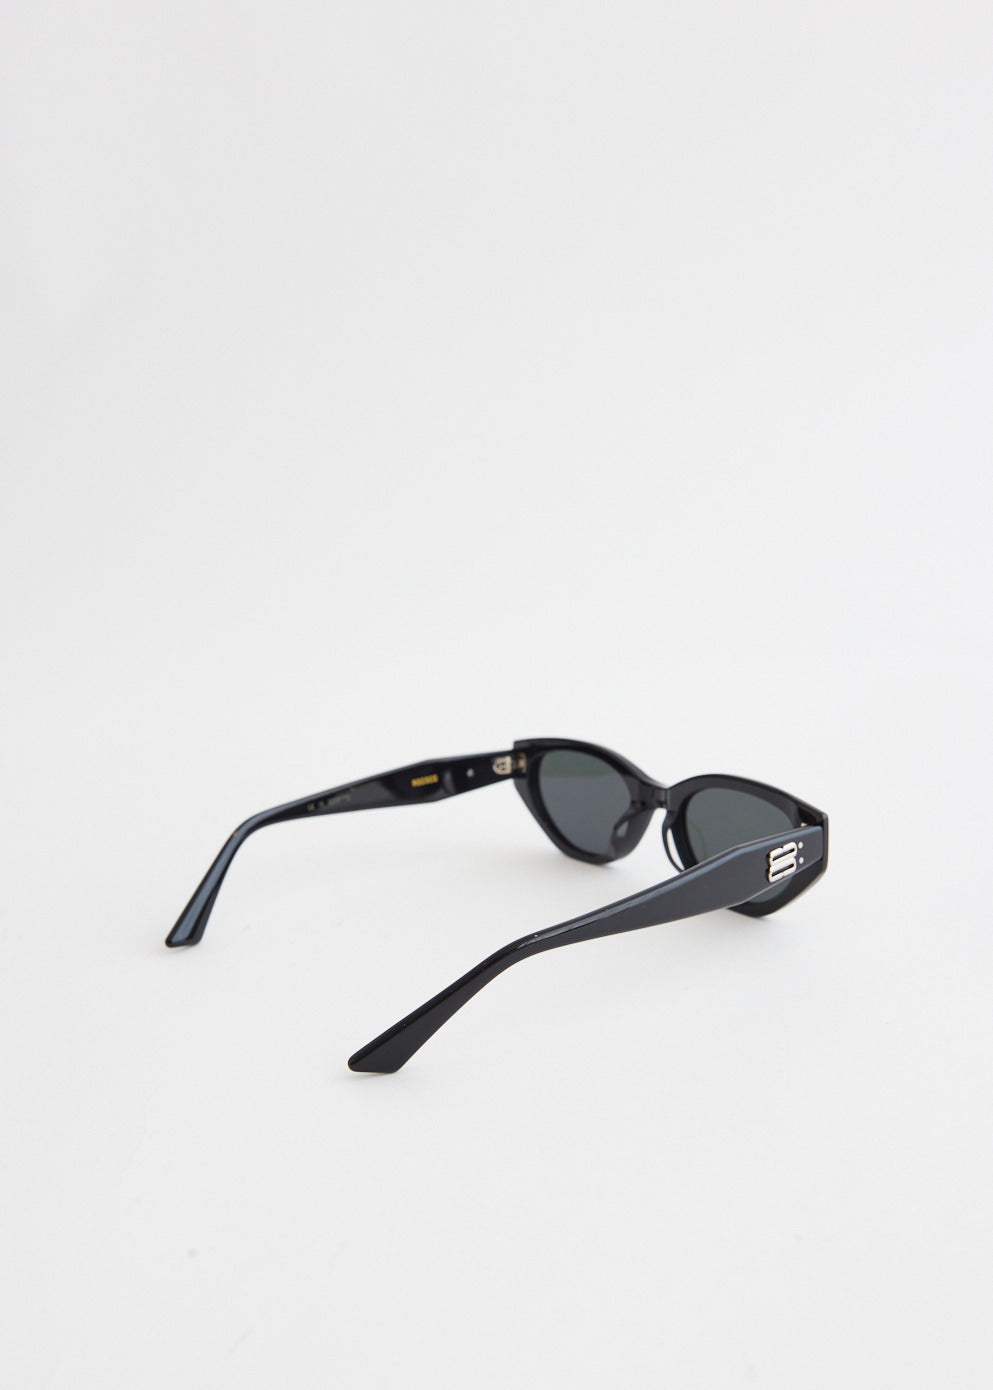 Rococo-01 Sunglasses